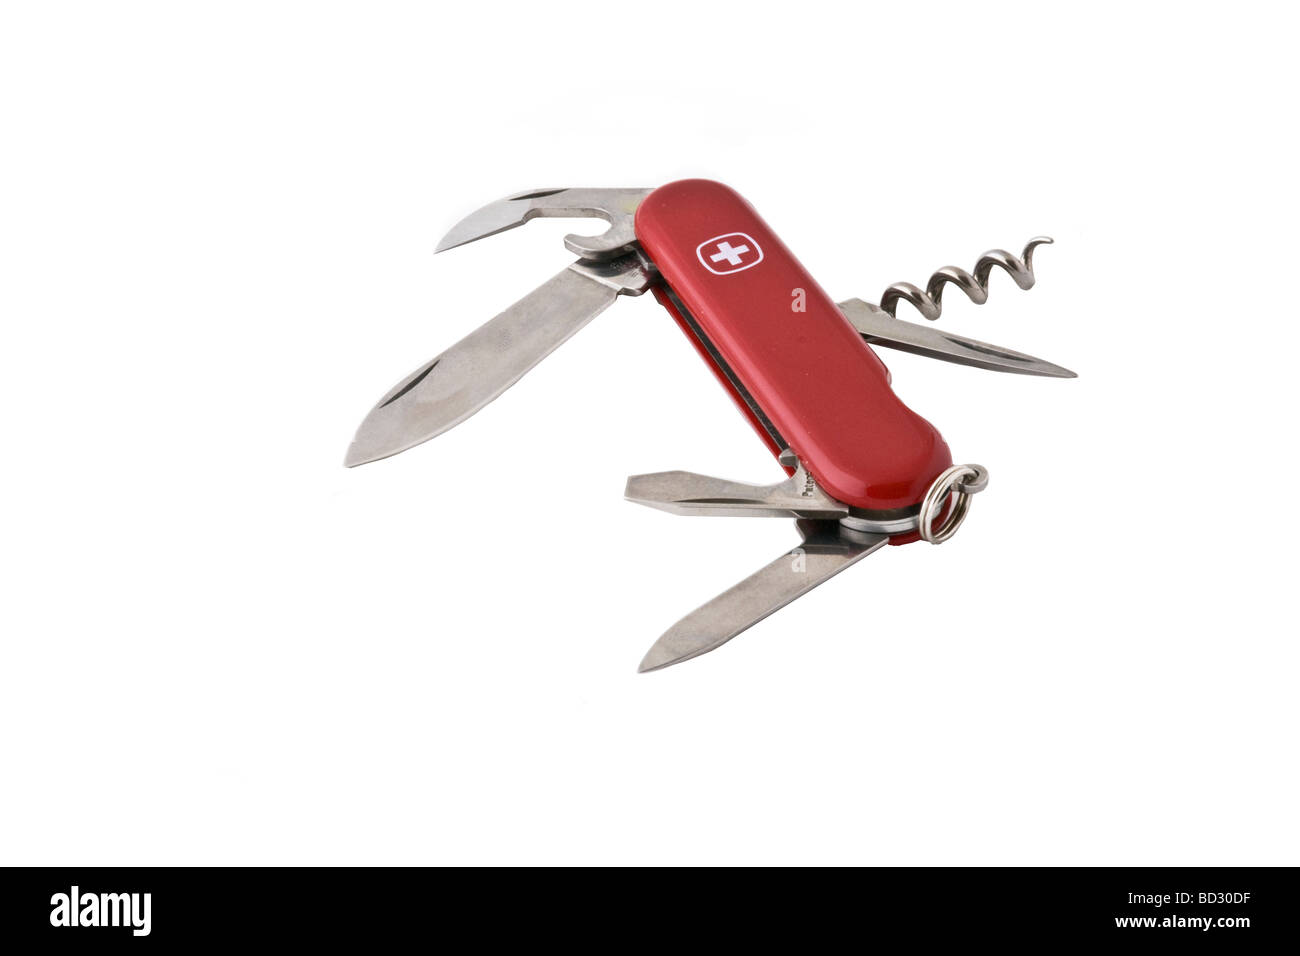 Couteau suisse faite par Wenger. - Modèle Classic 7 Banque D'Images